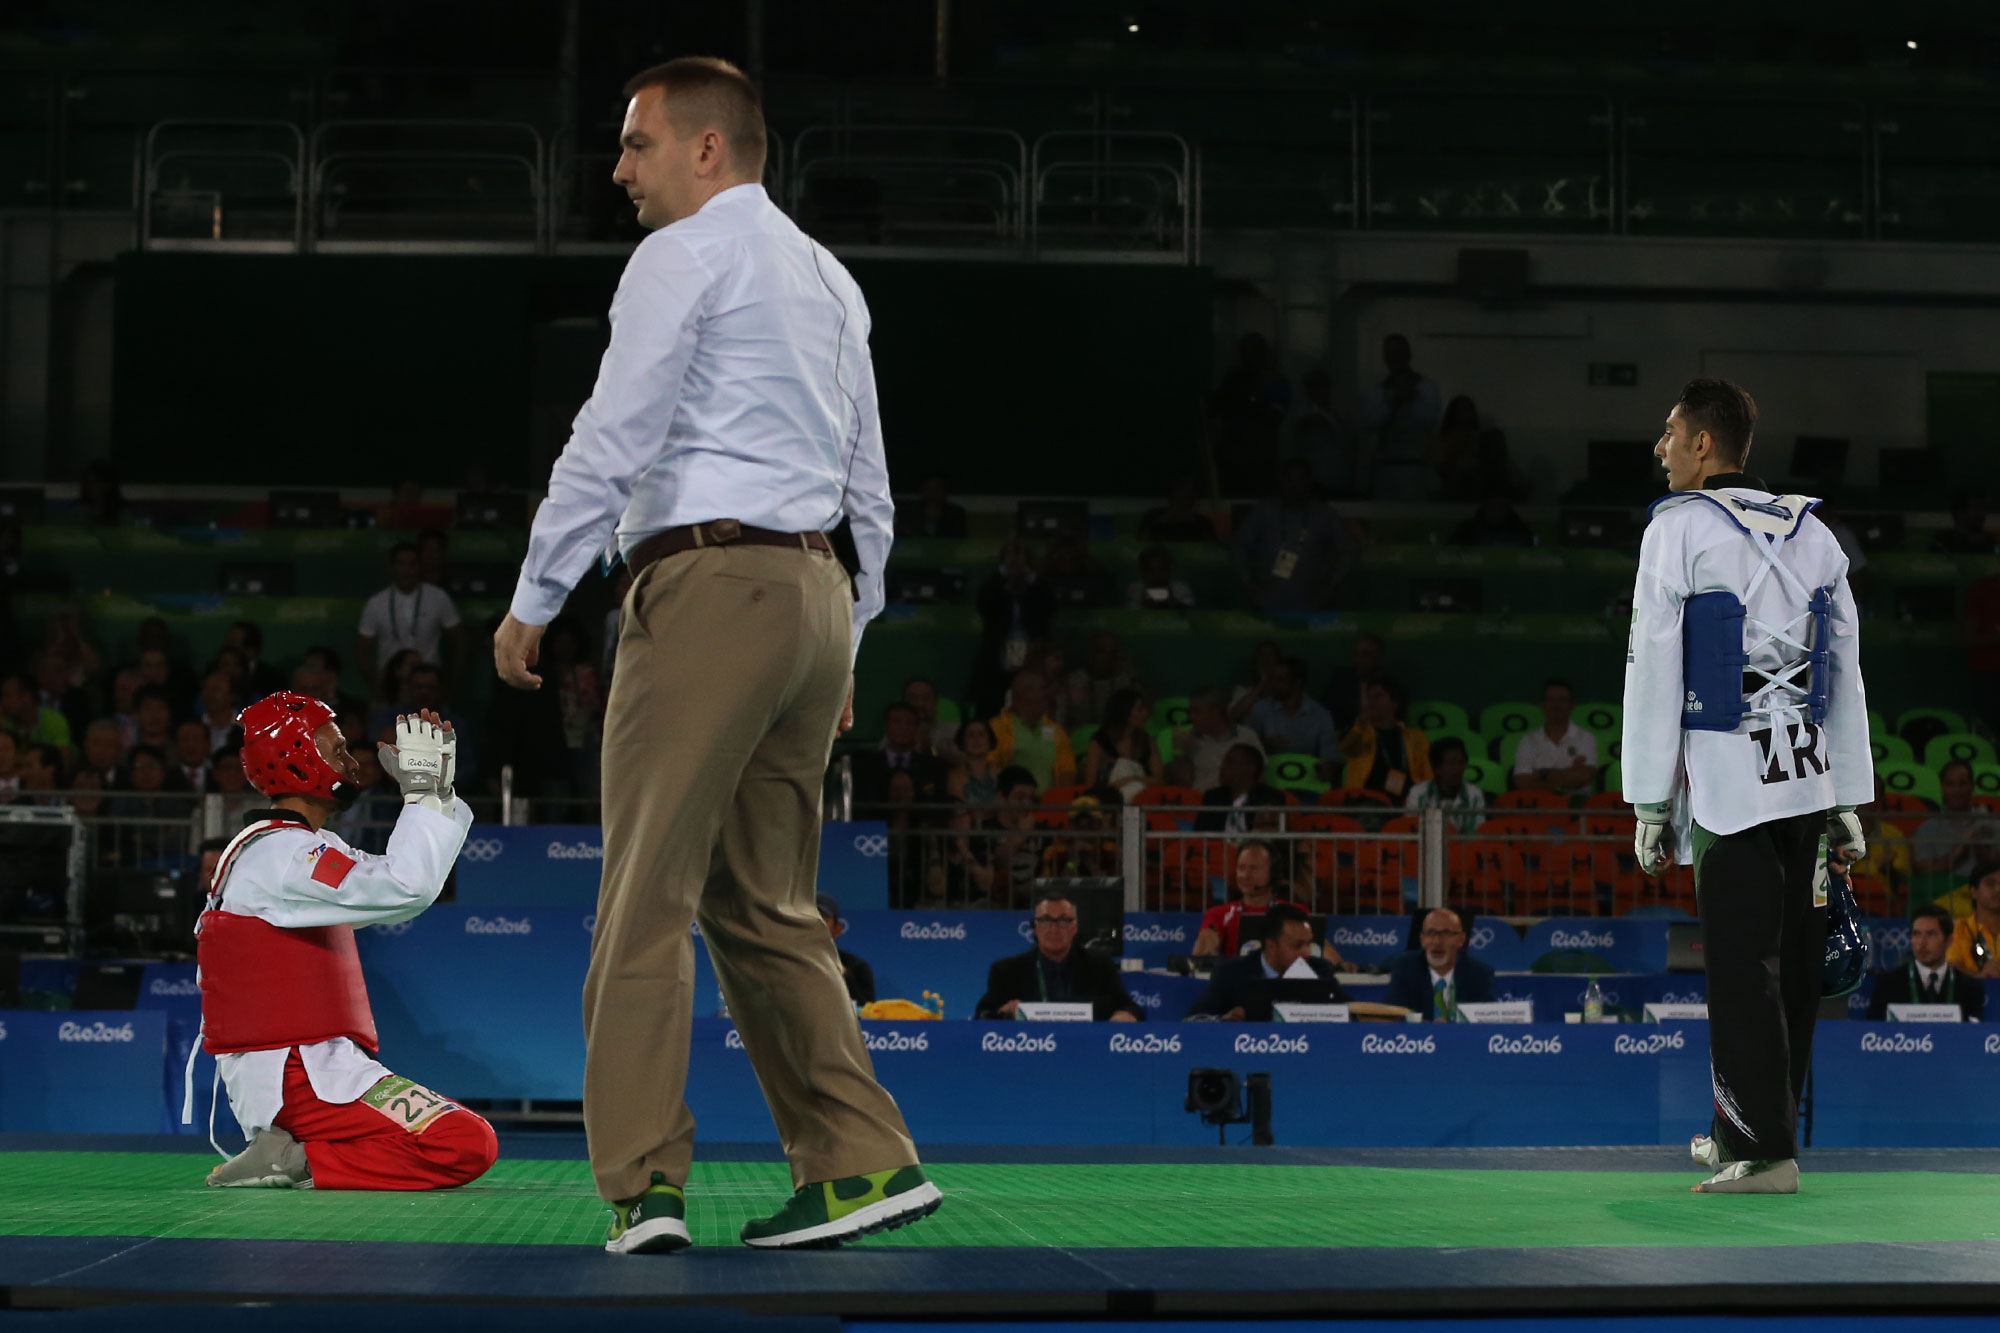 گزارش تصویری تابناک از حذف فرزان عاشورزاده از تکواندوی المپیک